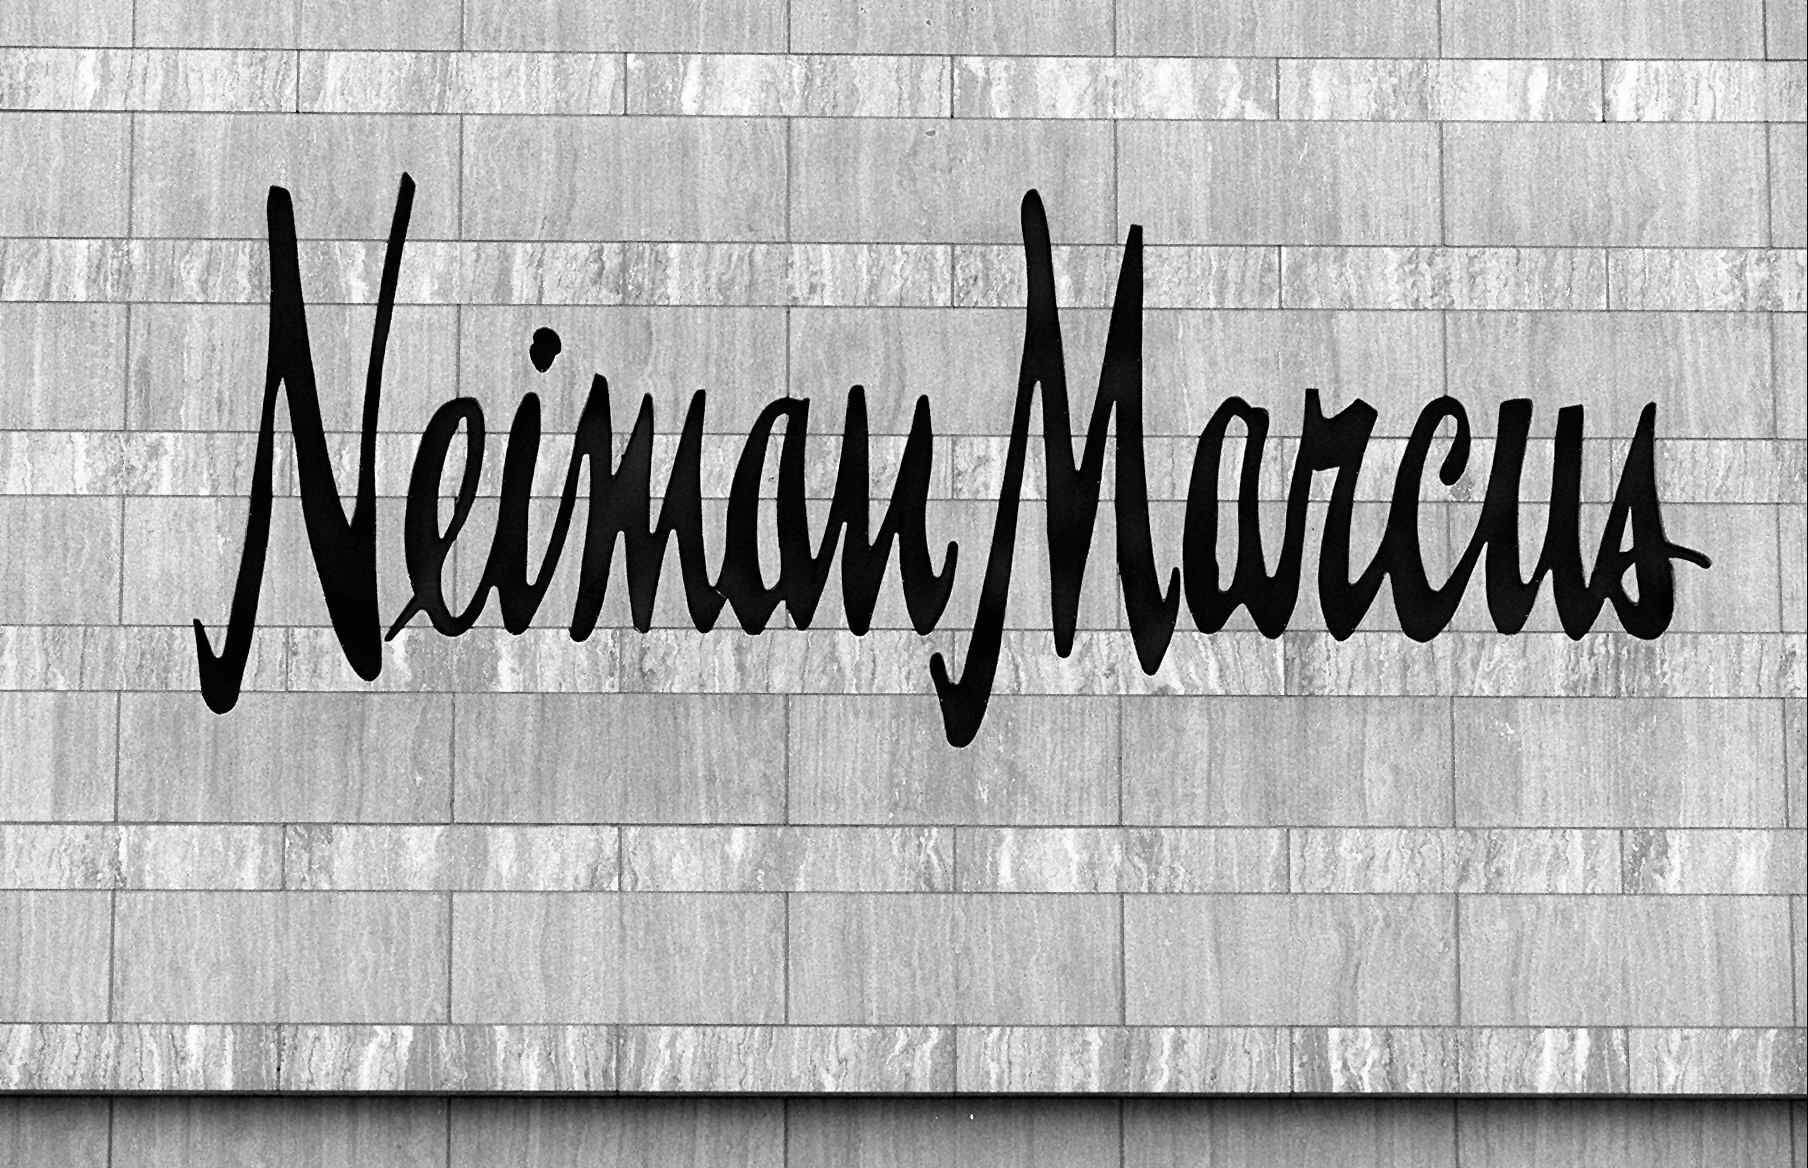 Neiman Marcus - Short Hills